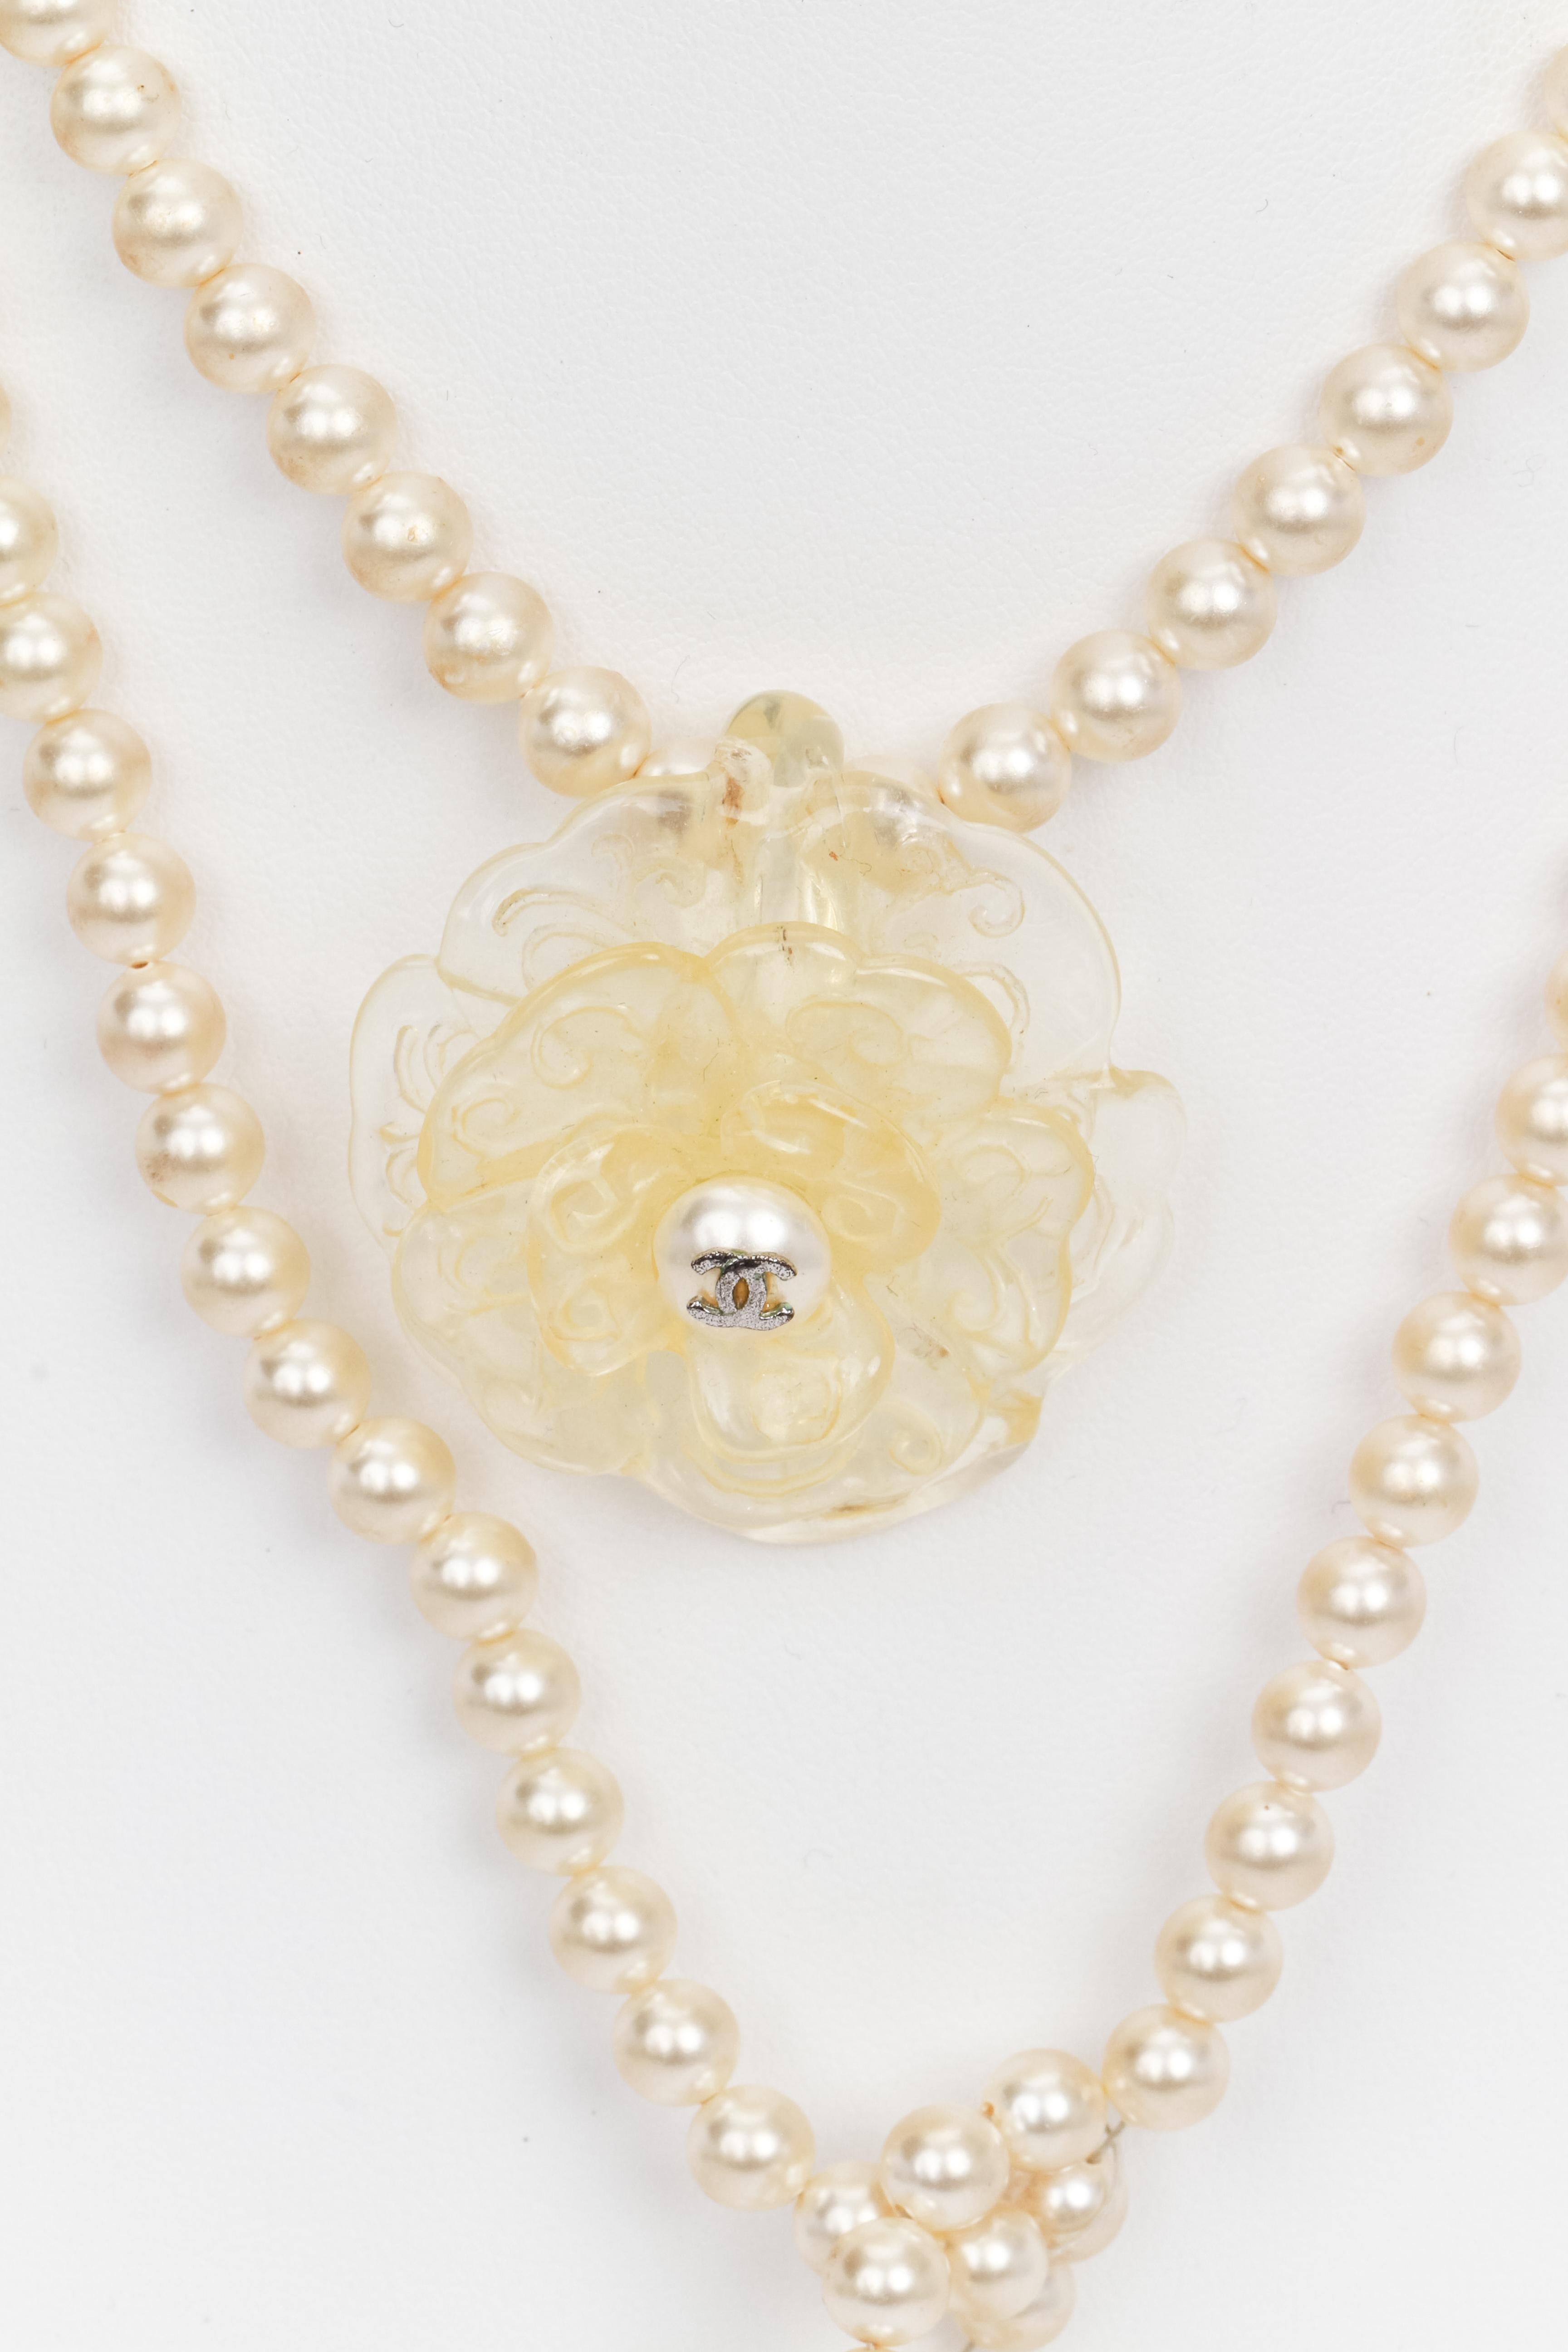 Chanel lange offene Halskette mit Perlen, in deren Mitte eine Kamelienblüte aus Lucit mit Perle und CC-Logo steht. Endstücke aus Lucite an beiden Enden. Kreieren Sie Ihre eigene Art, ihn zu tragen. 1990s